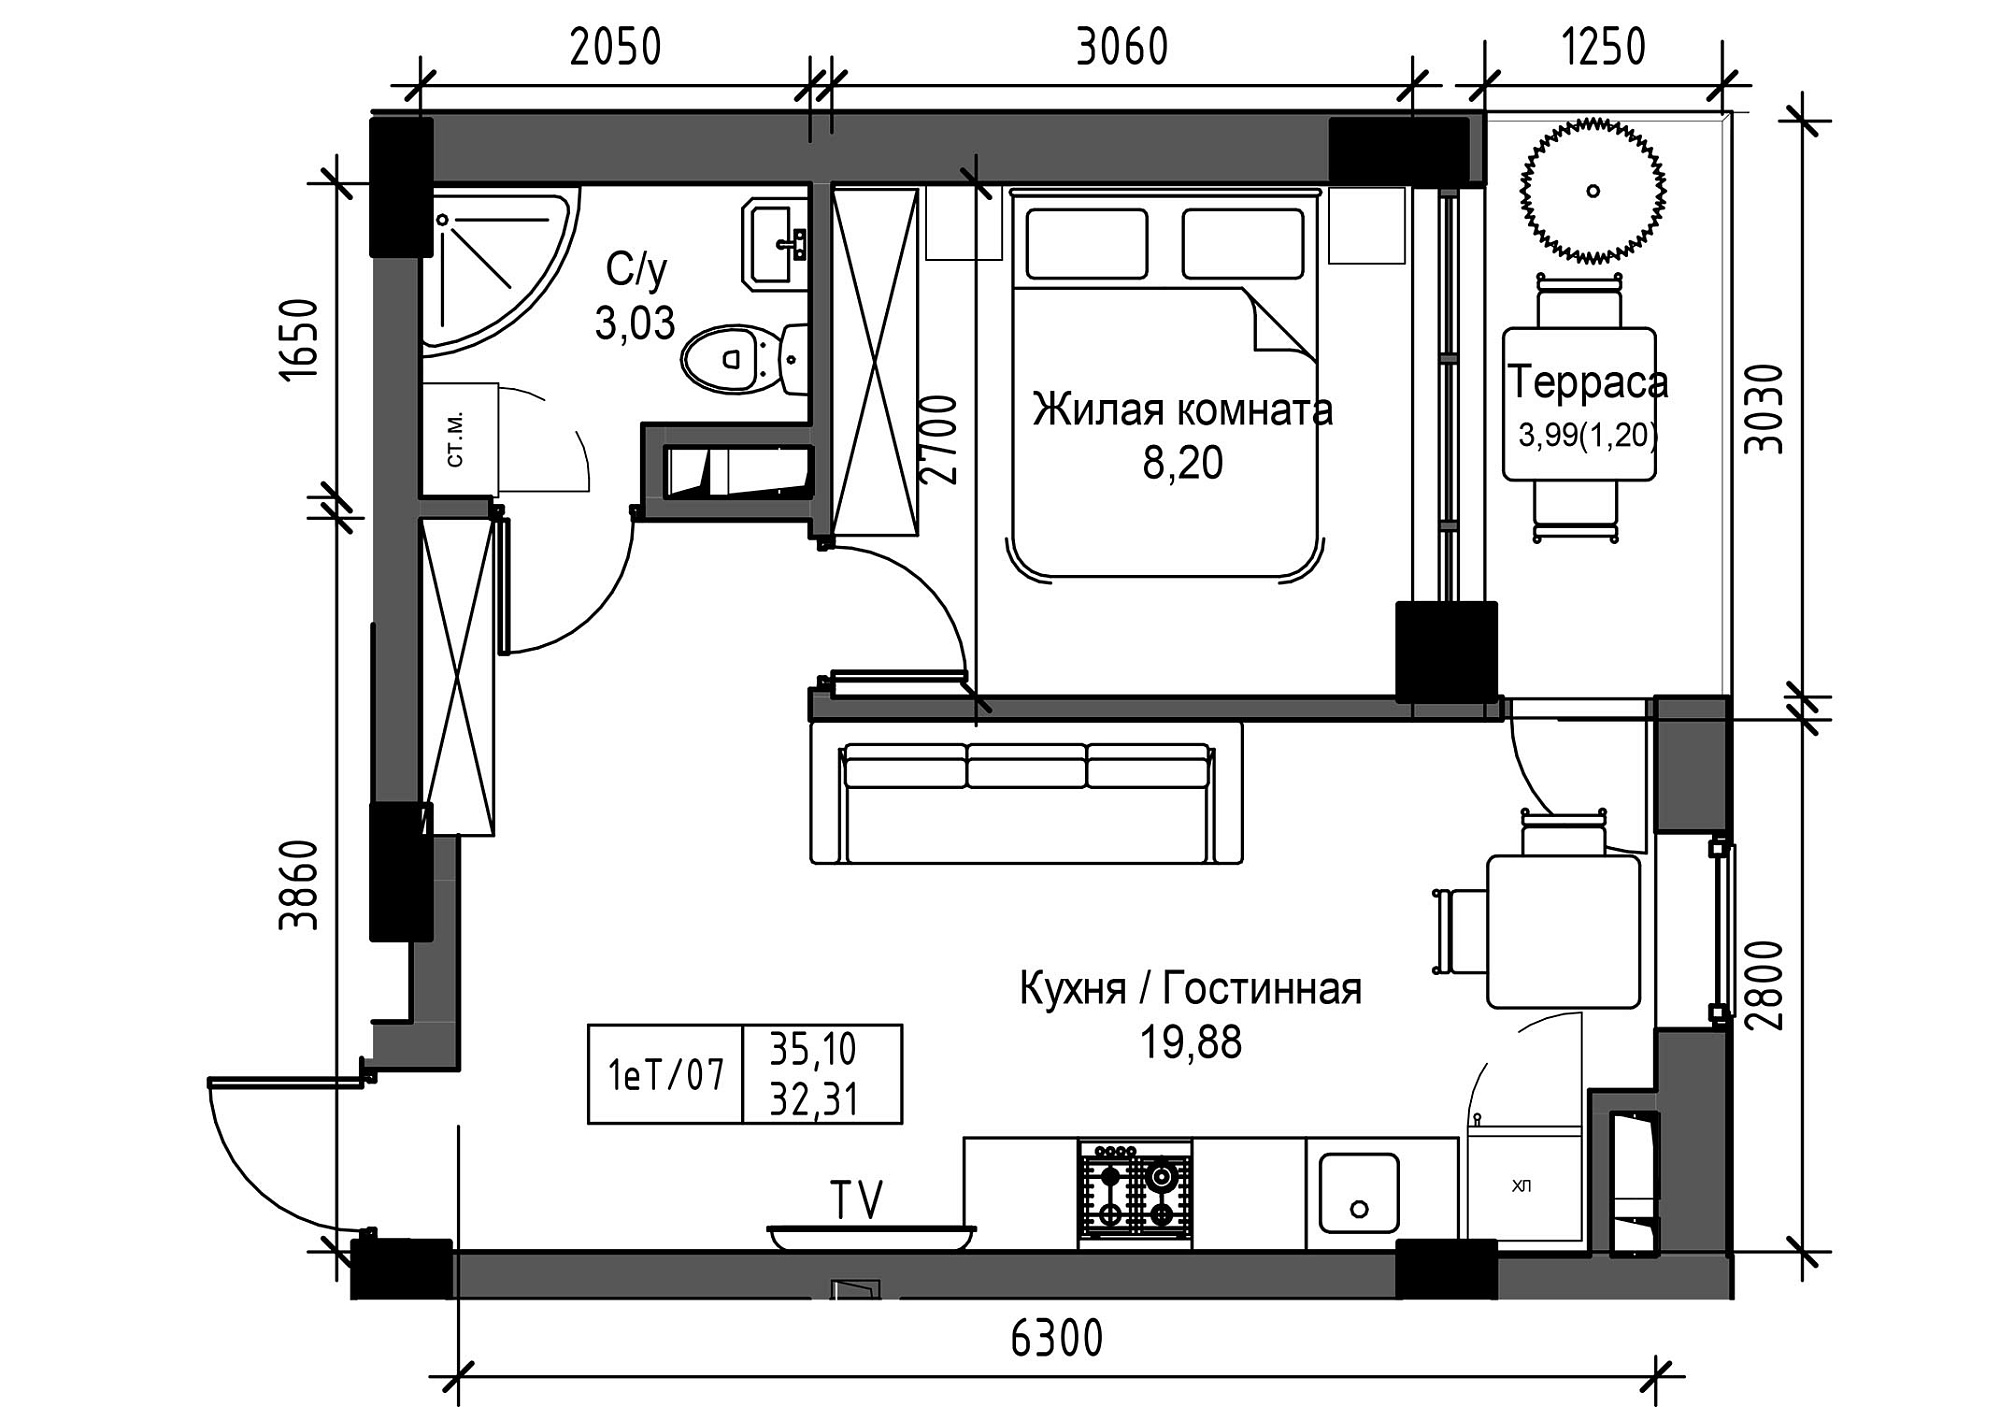 Планировка 1-к квартира площей 32.31м2, UM-003-03/0017.